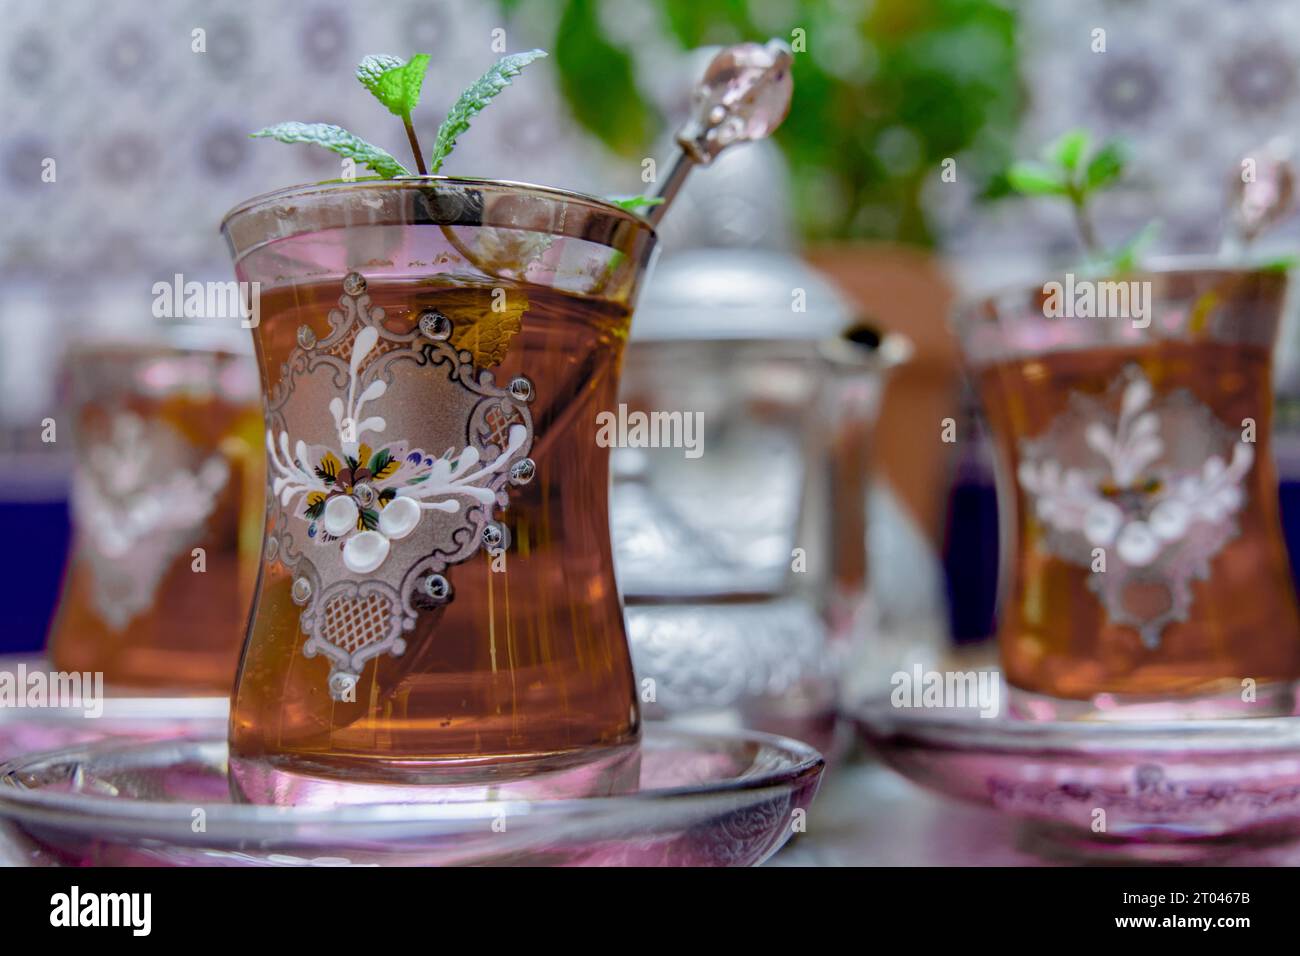 Tè moresco con menta, bevanda tradizionale marocchina in bicchieri di cristallo decorati, teiera argentata e ciotola da zucchero sullo sfondo Foto Stock